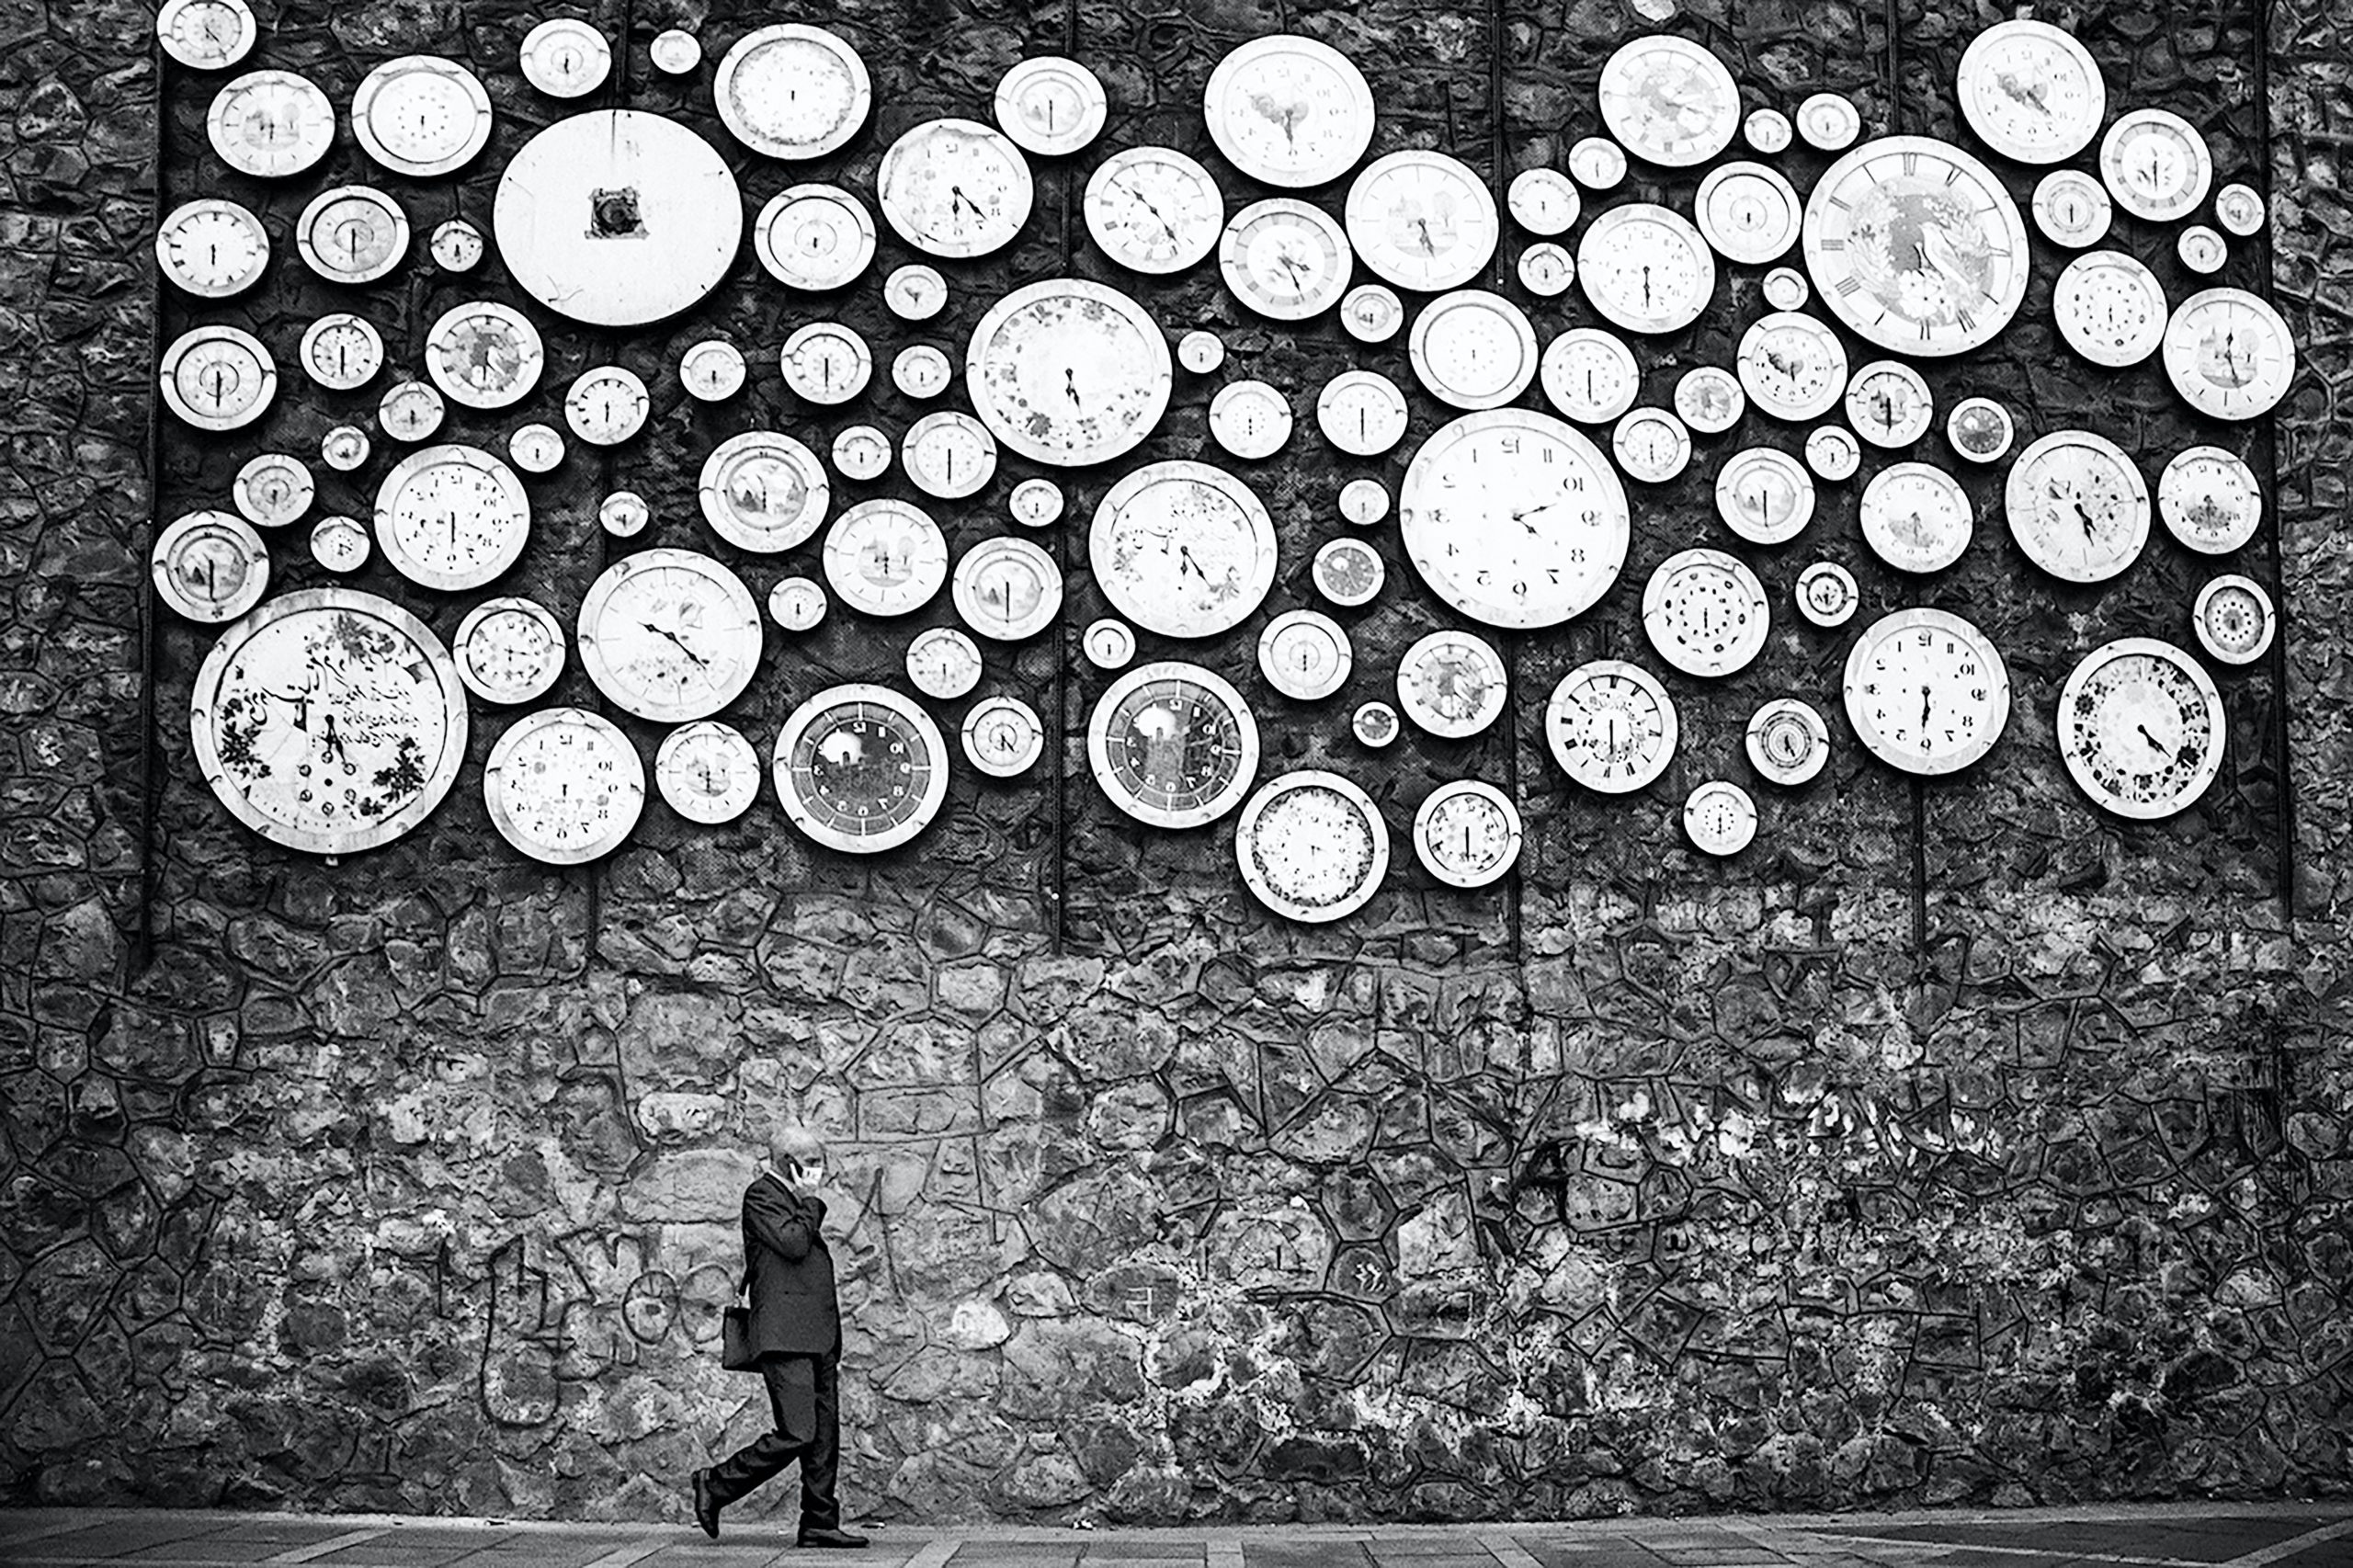 Personne qui marche dans la rue en longeant un mur en pierre sur lequel se trouve sur toute la partie haute des dizaine d'horloges murales rondes instalées les unes à côté des autres